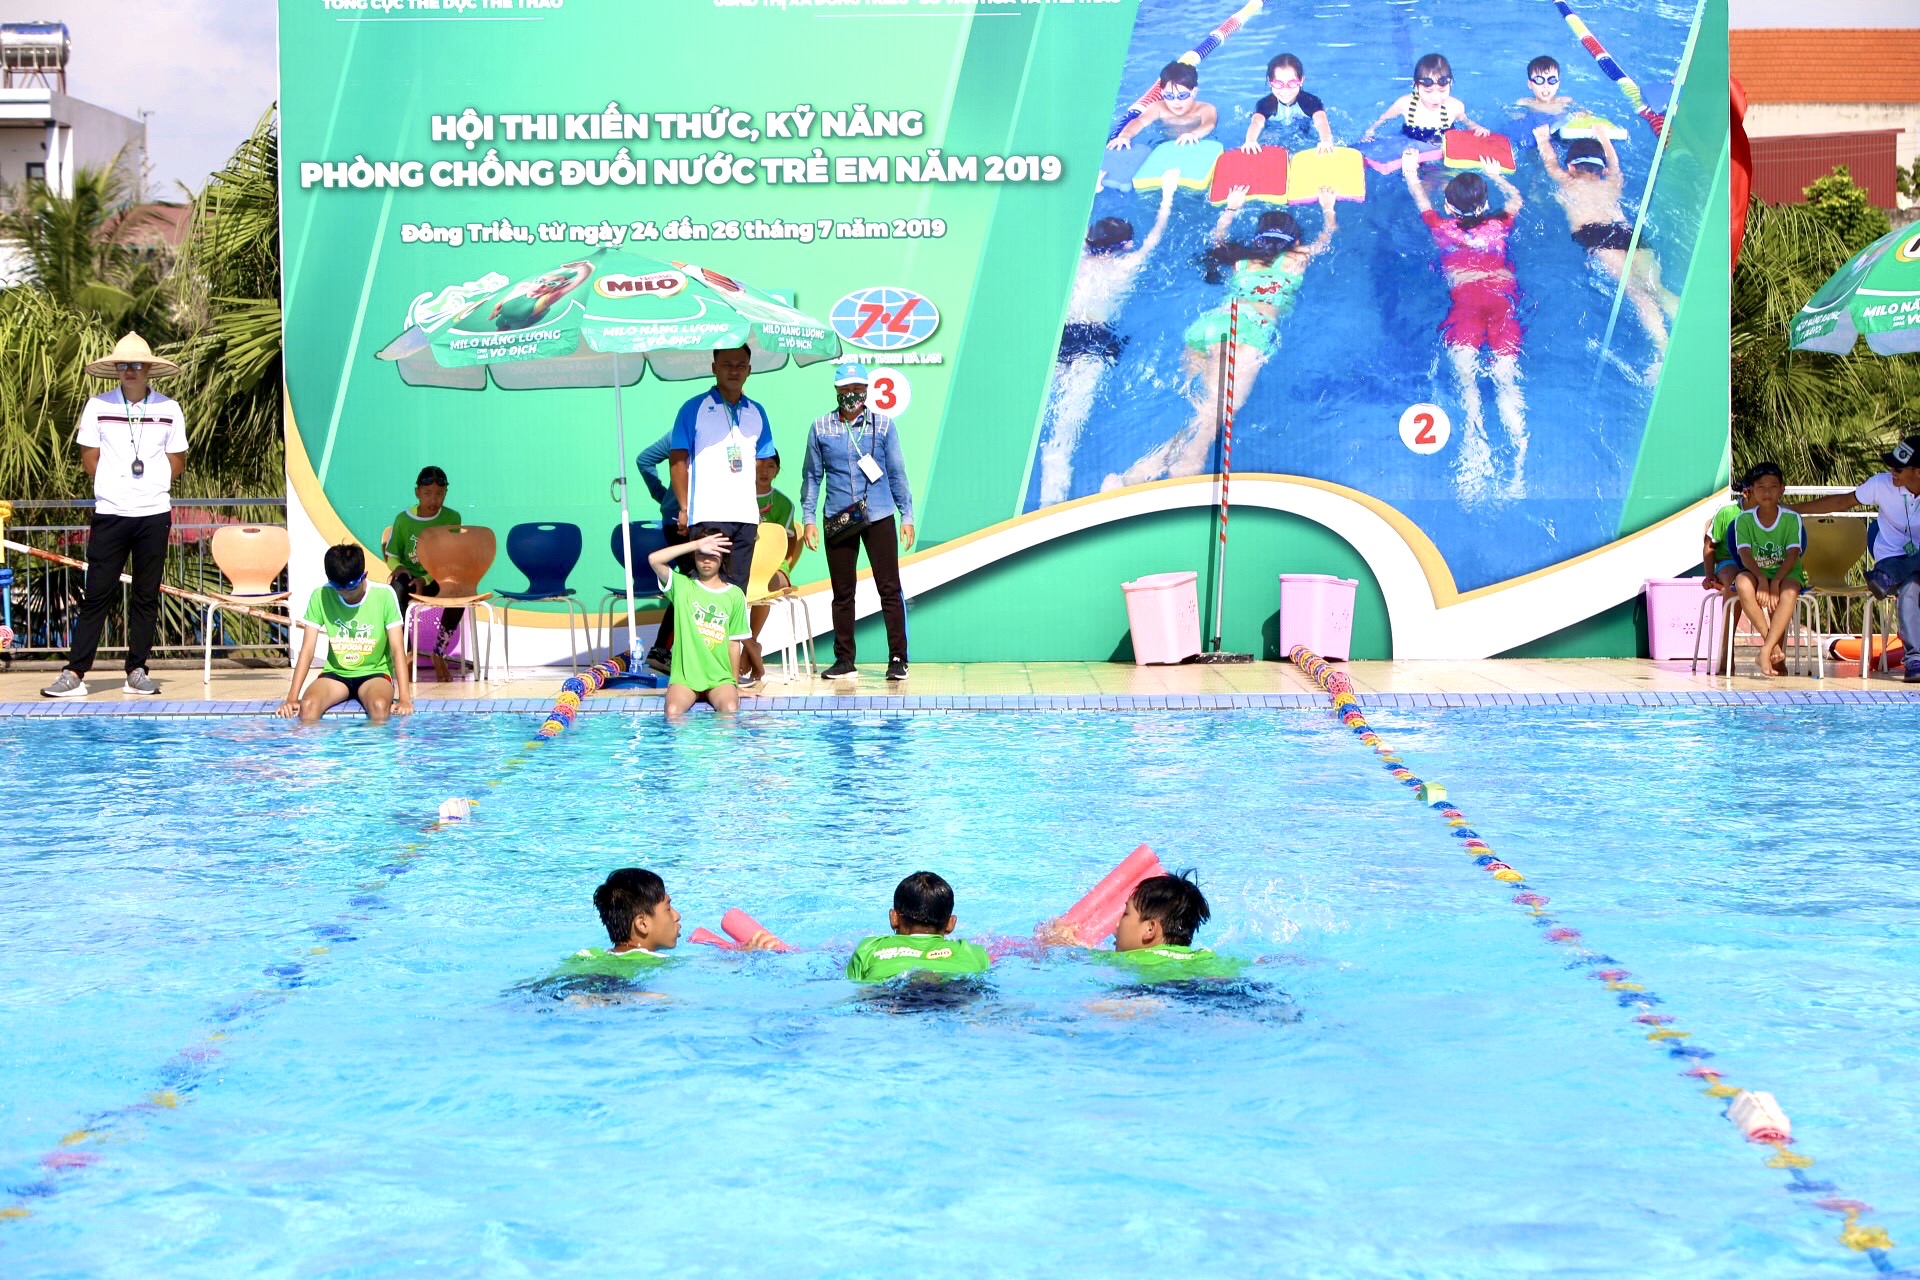 Hội thi kiến thức, kỹ năng phòng chống đuối nước trẻ em năm 2019 được TX Đông Triều tổ chức trong những ngày hè tháng 7.